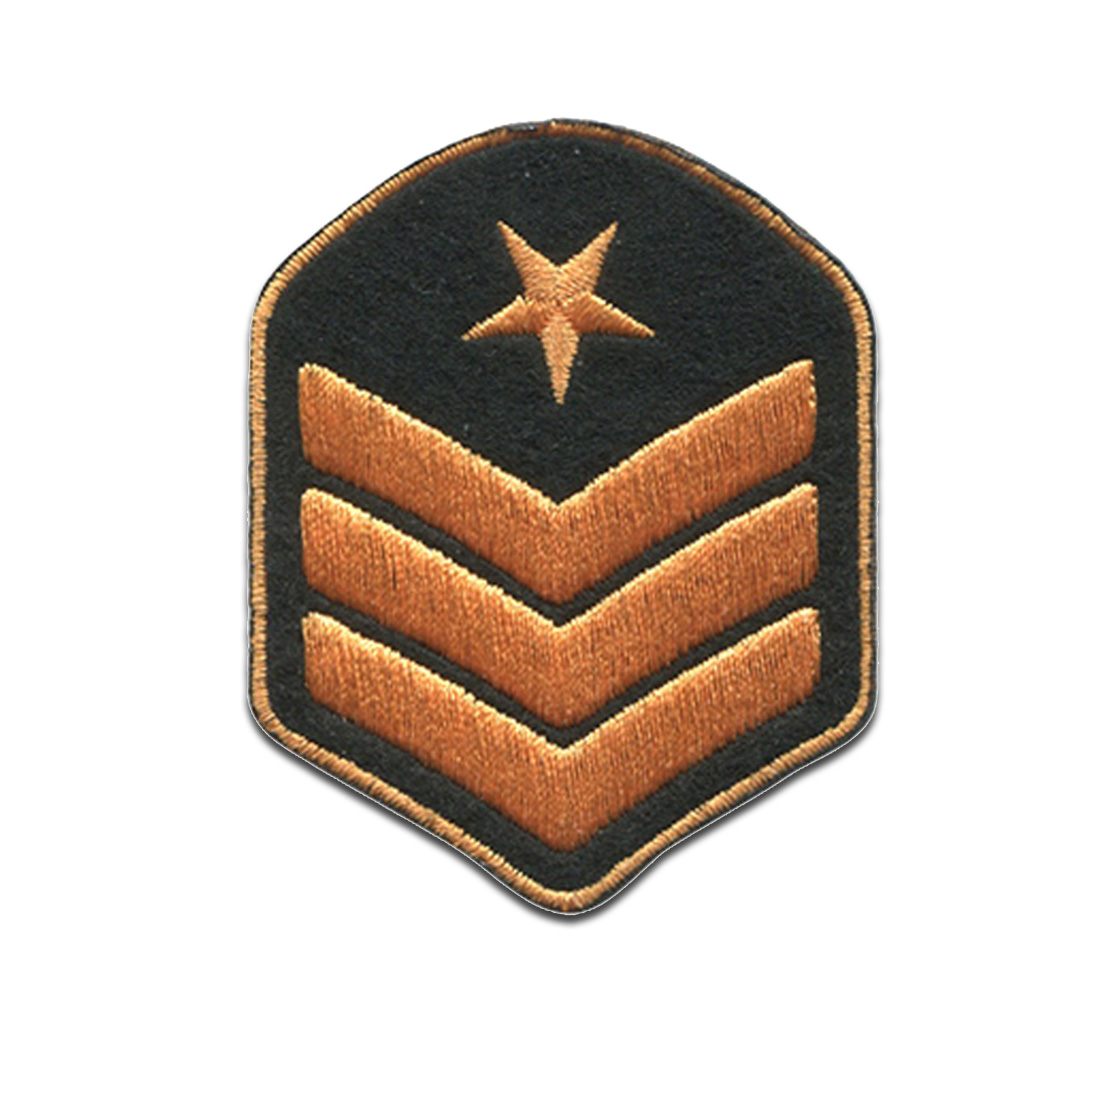 Aufnäher / Bügelbild - Brigadier General Militär Abzeichen Army